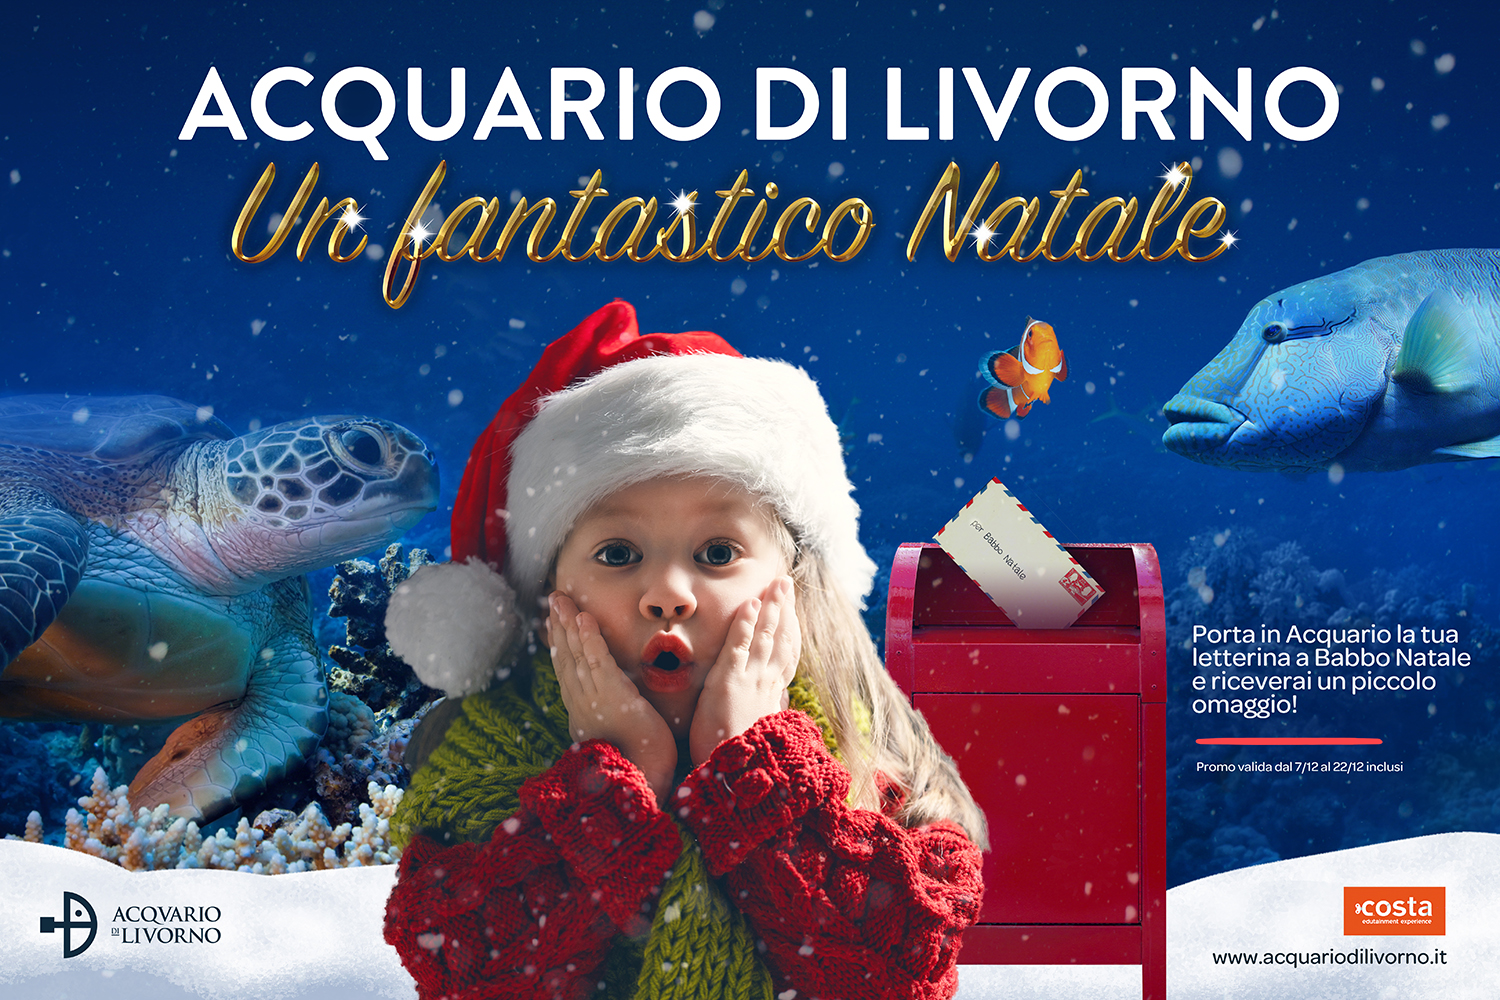 All’Acquario di Livorno si respira la magia del Natale